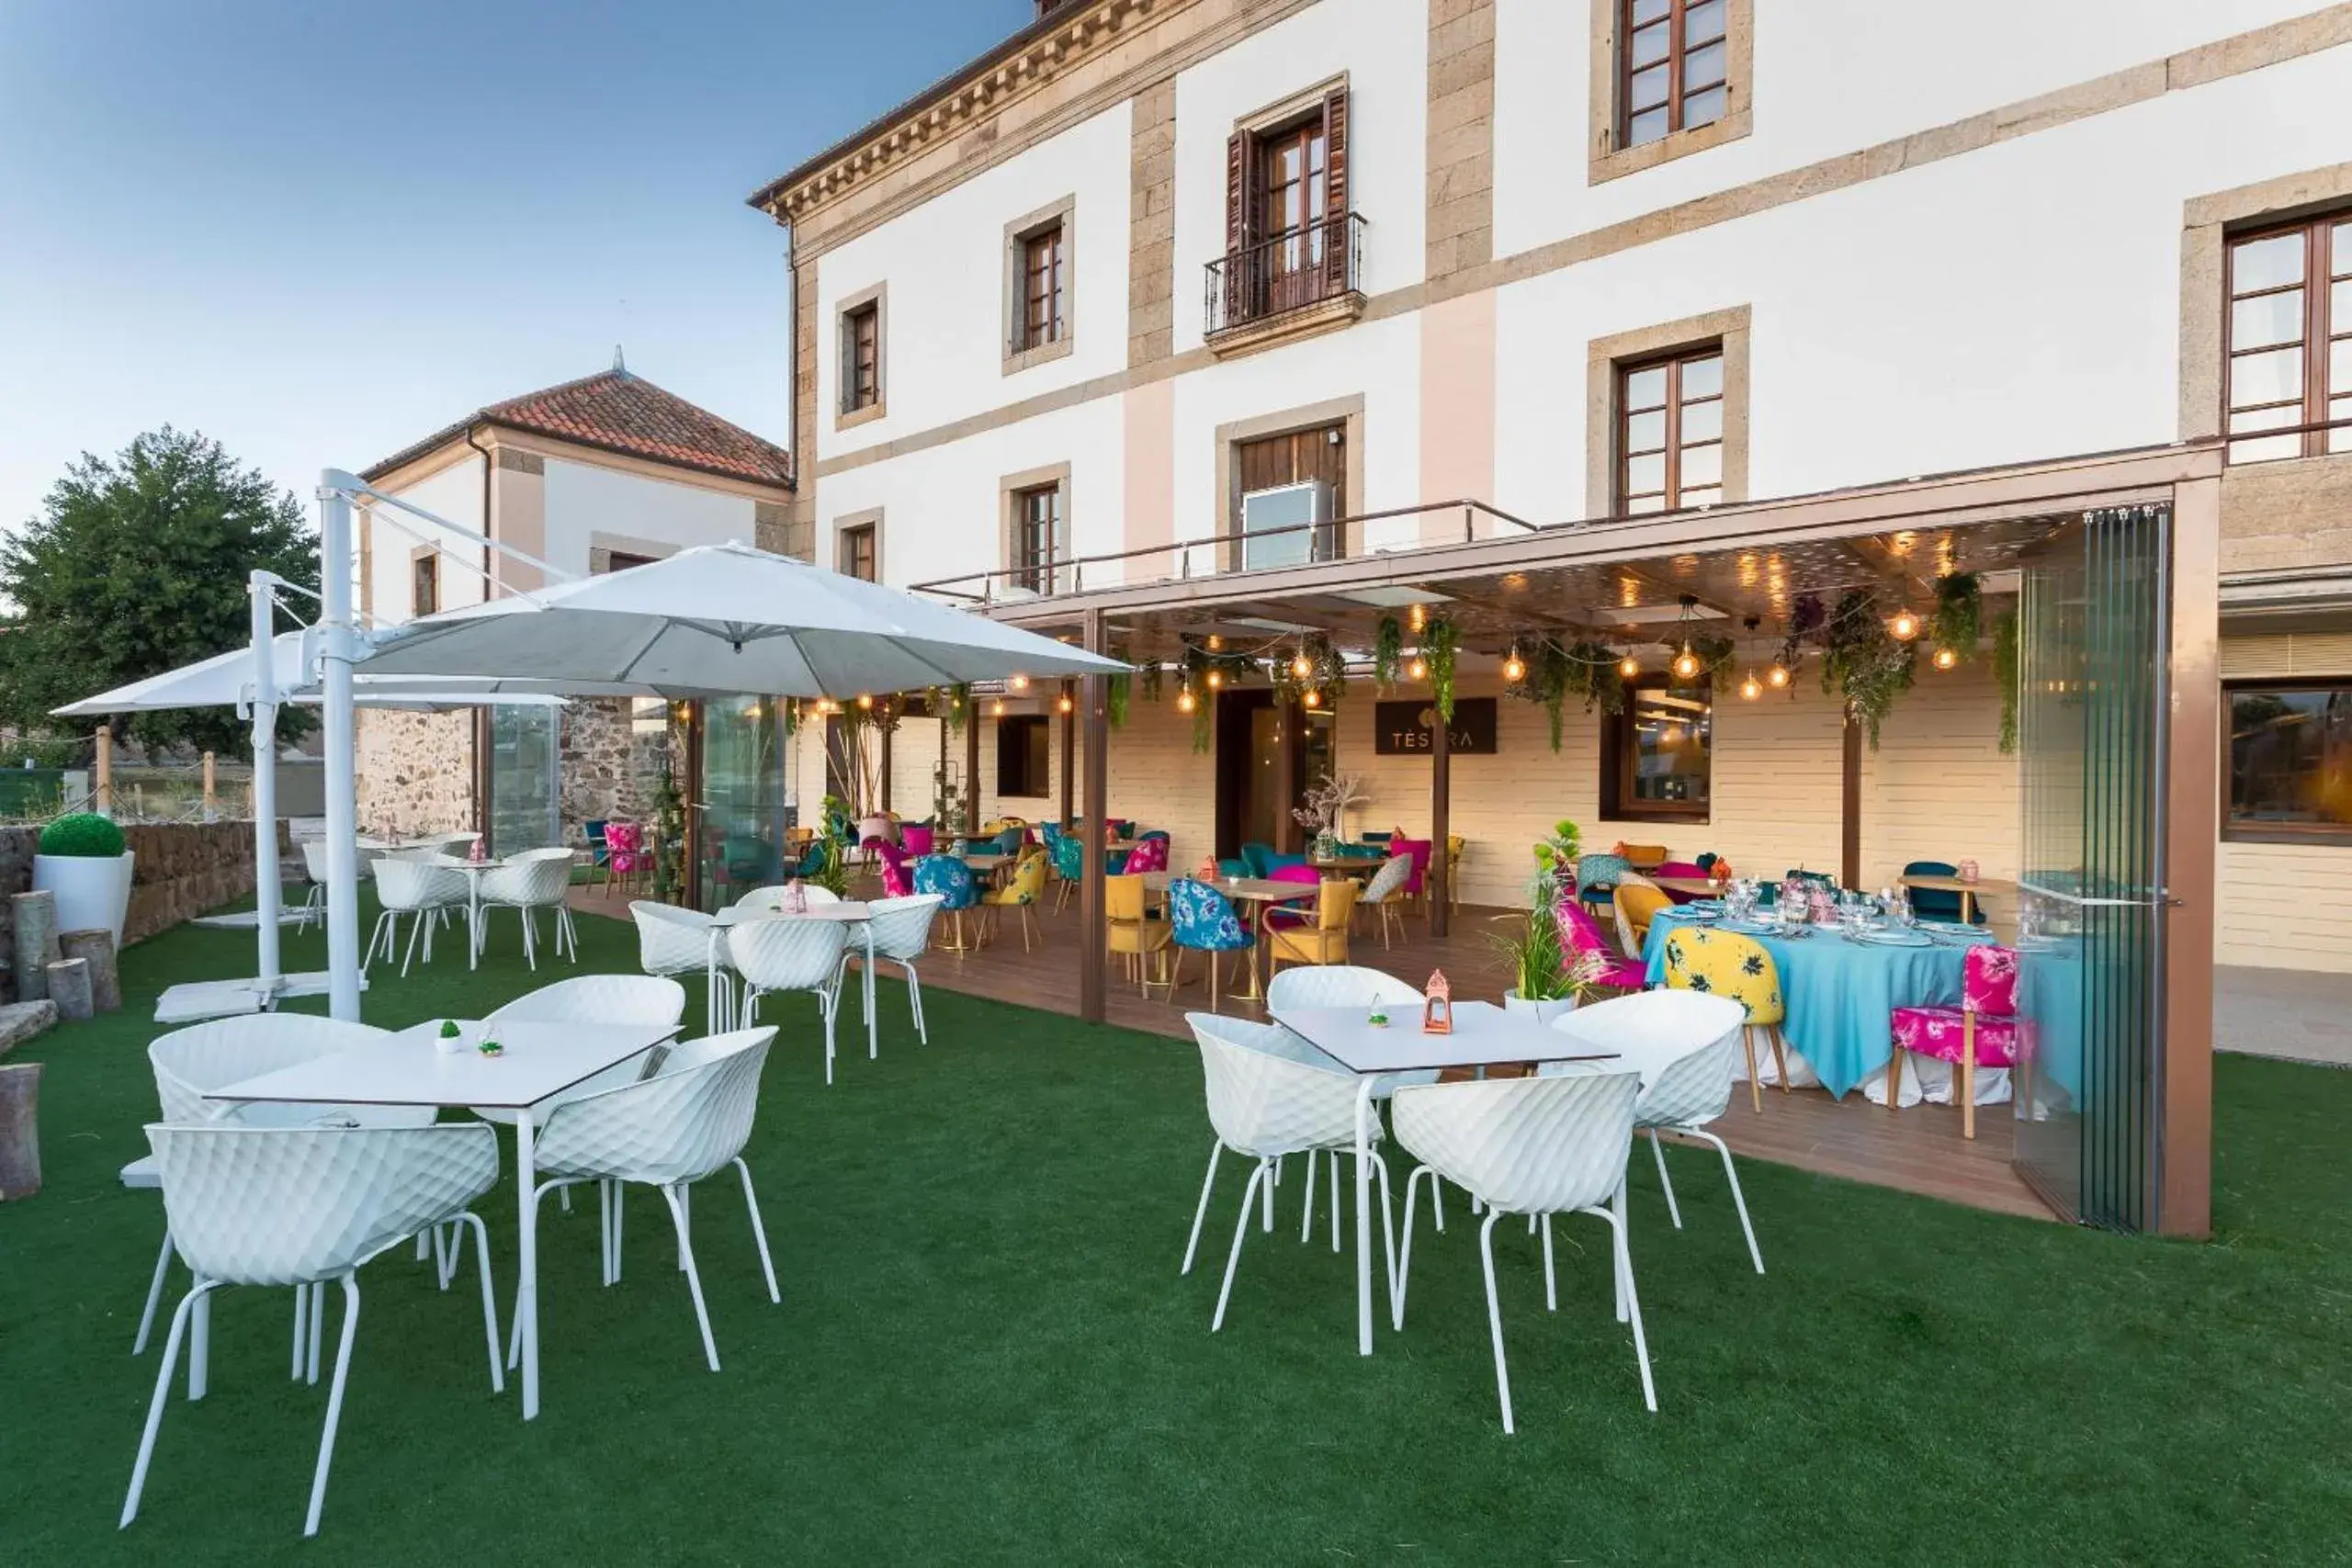 Restaurant/places to eat in Izan Puerta de Gredos